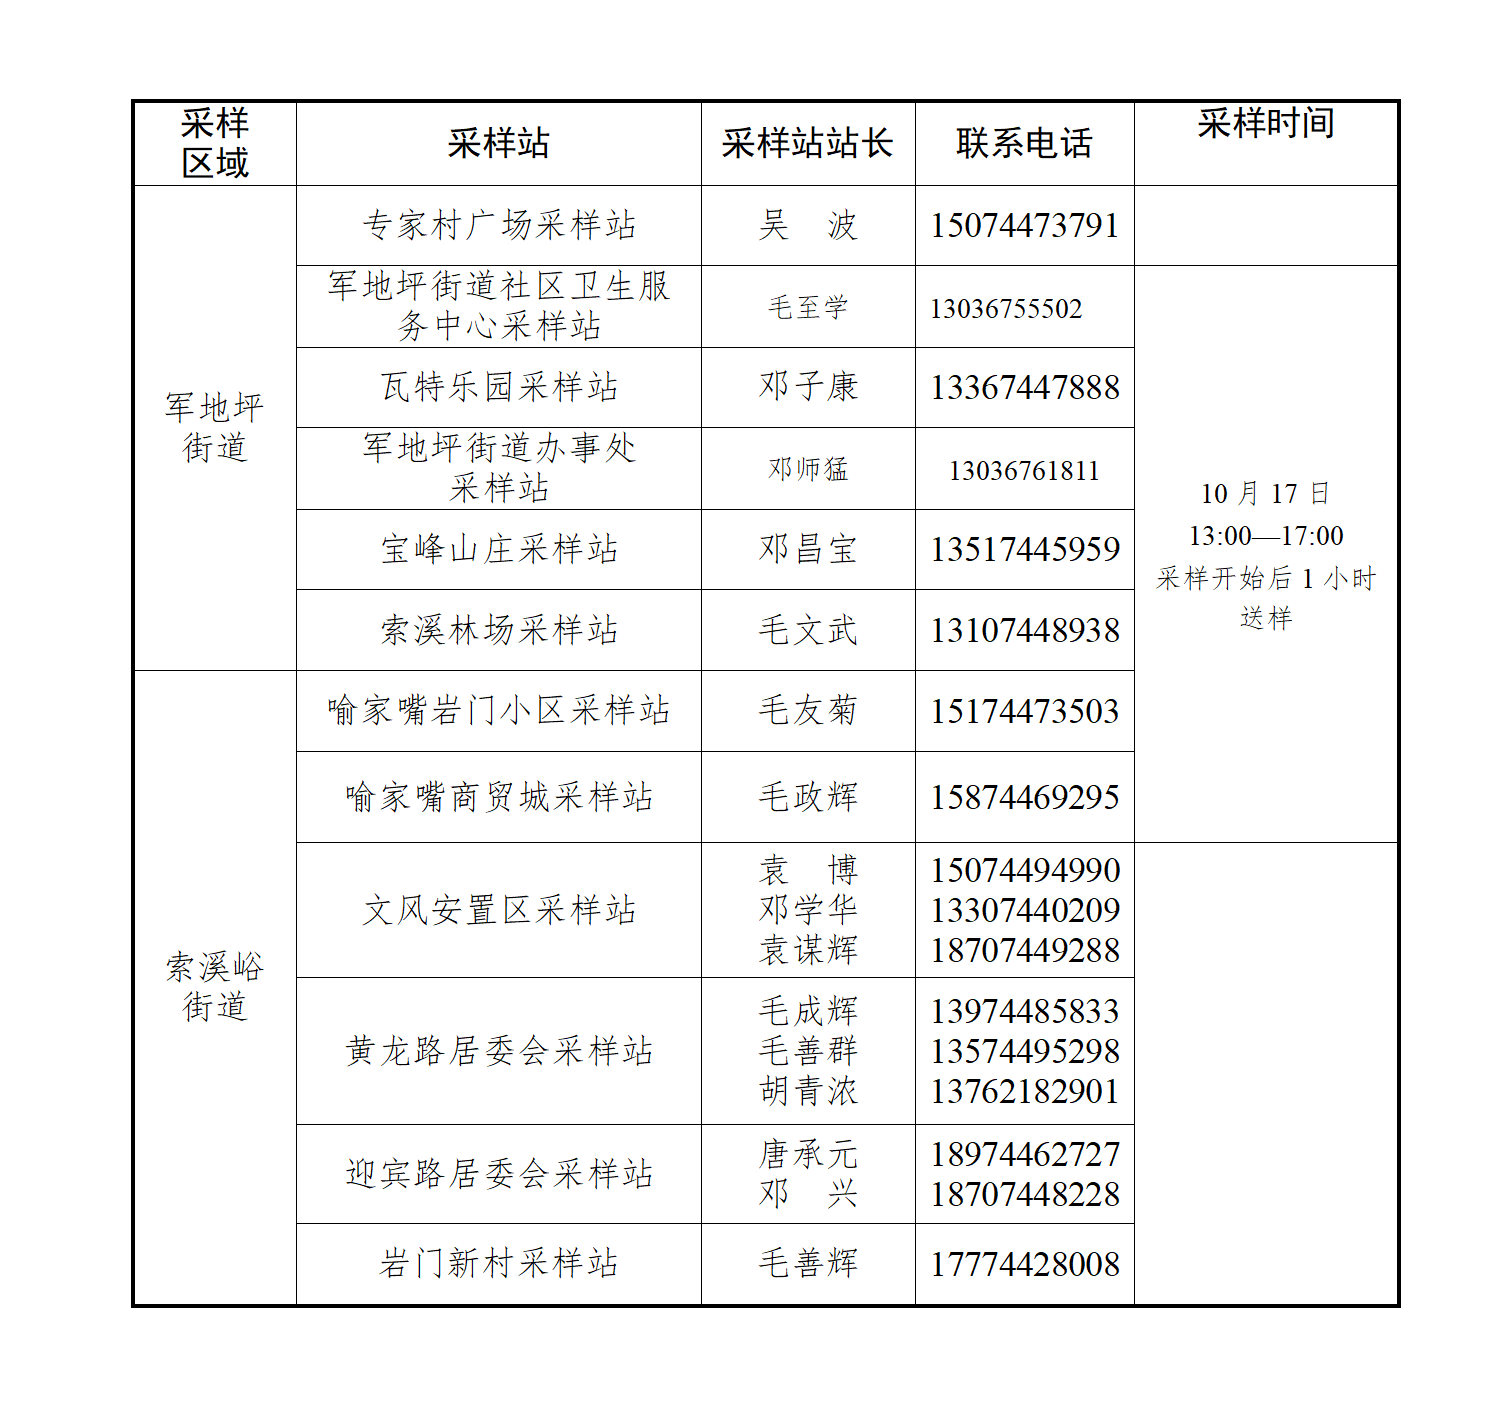 【10.17】城区全员核酸检测公告(1)(1)_01.png